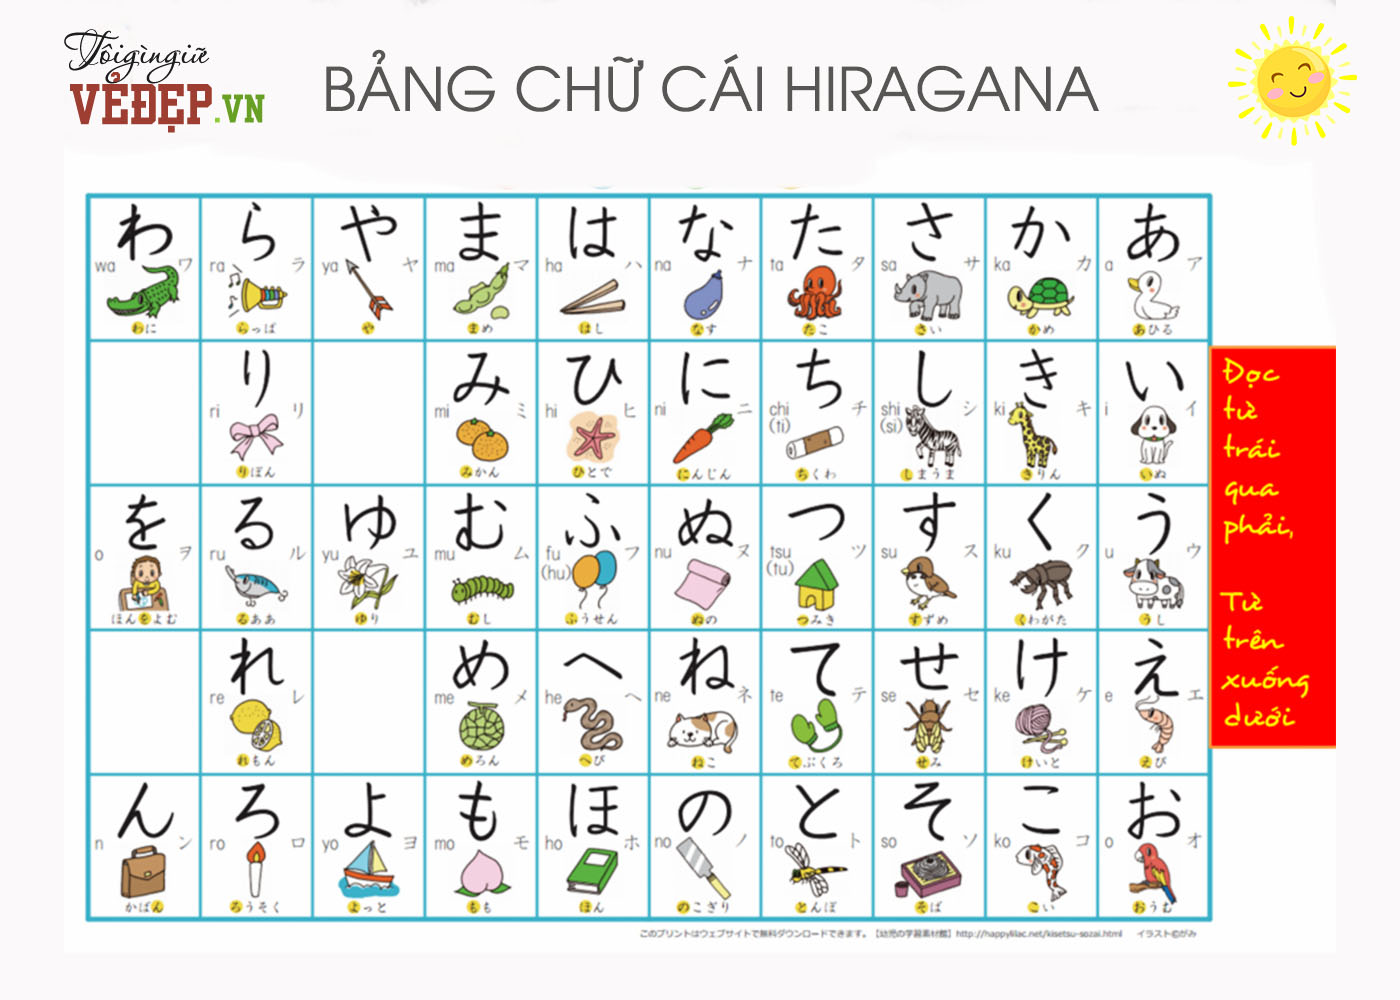 Hình ảnh bảng chữ cái Hiragana rõ nét, chi tiết nhất